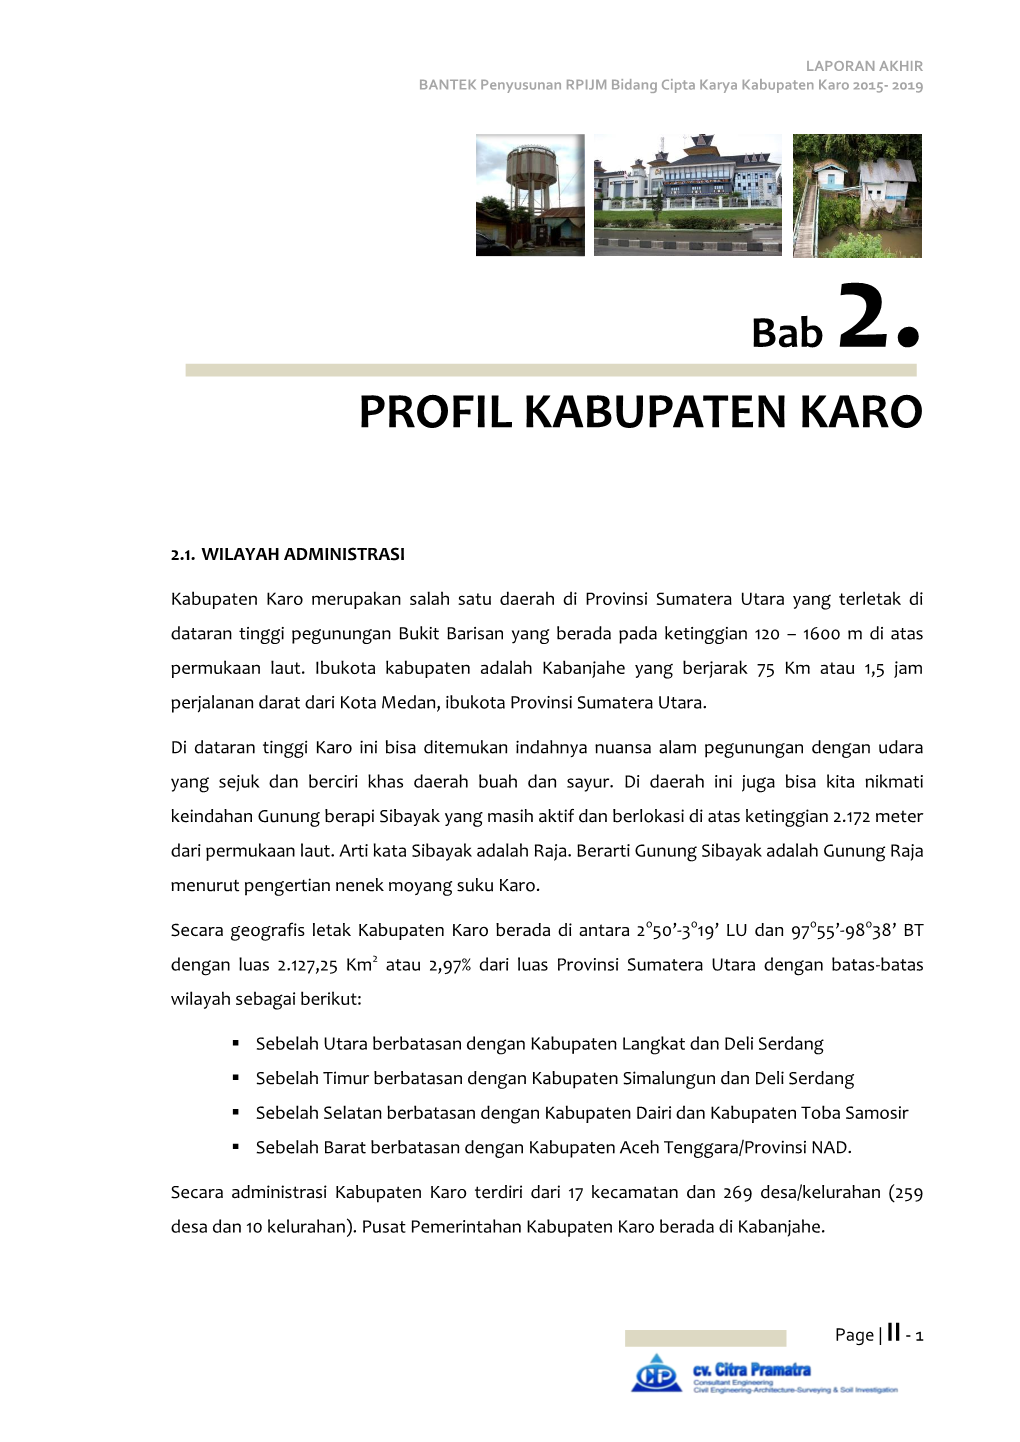 Profil Kabupaten Karo